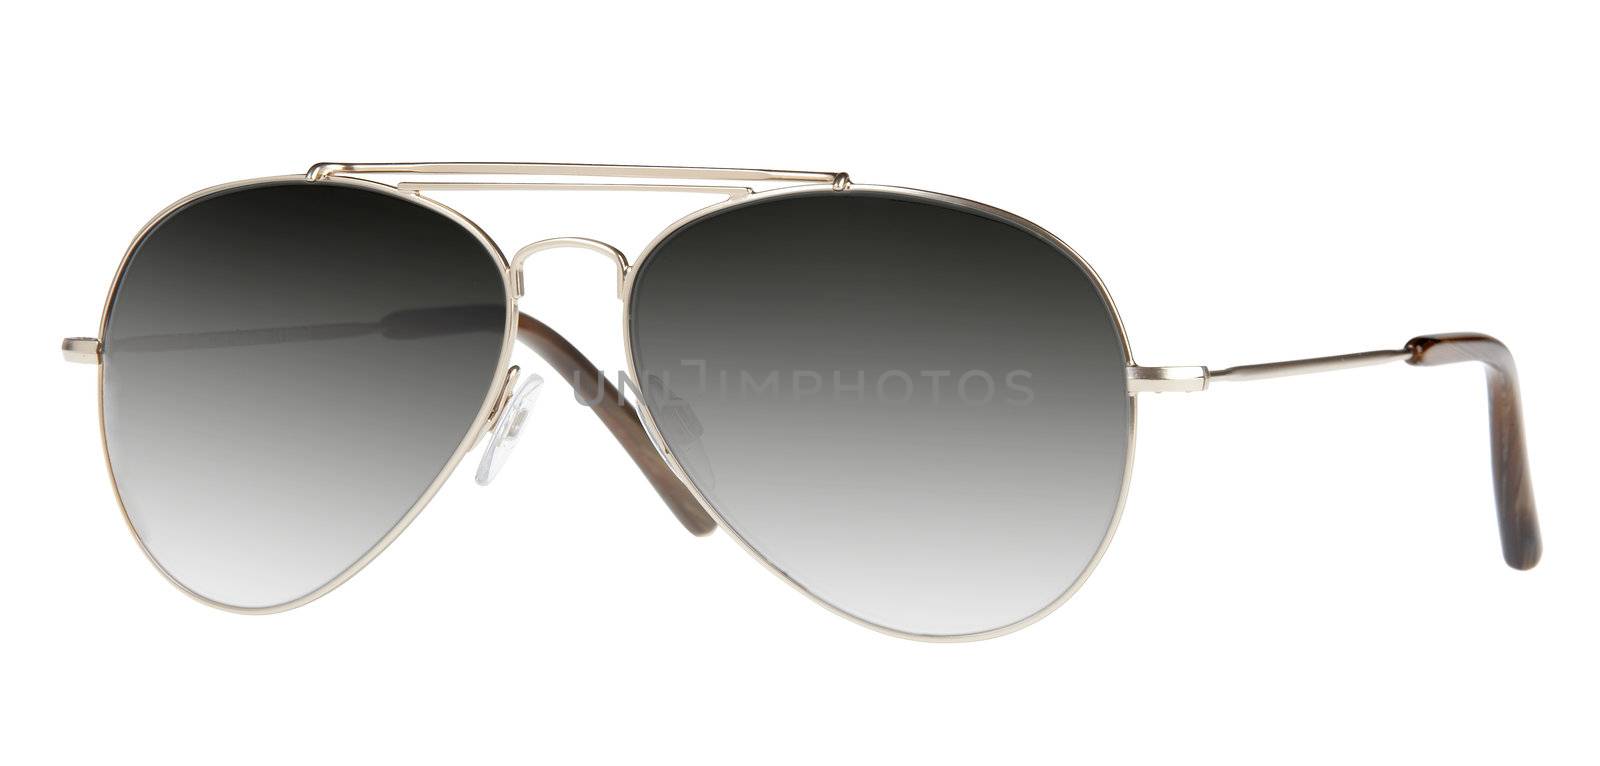 Mirrored aviator sunglasses isolated on white